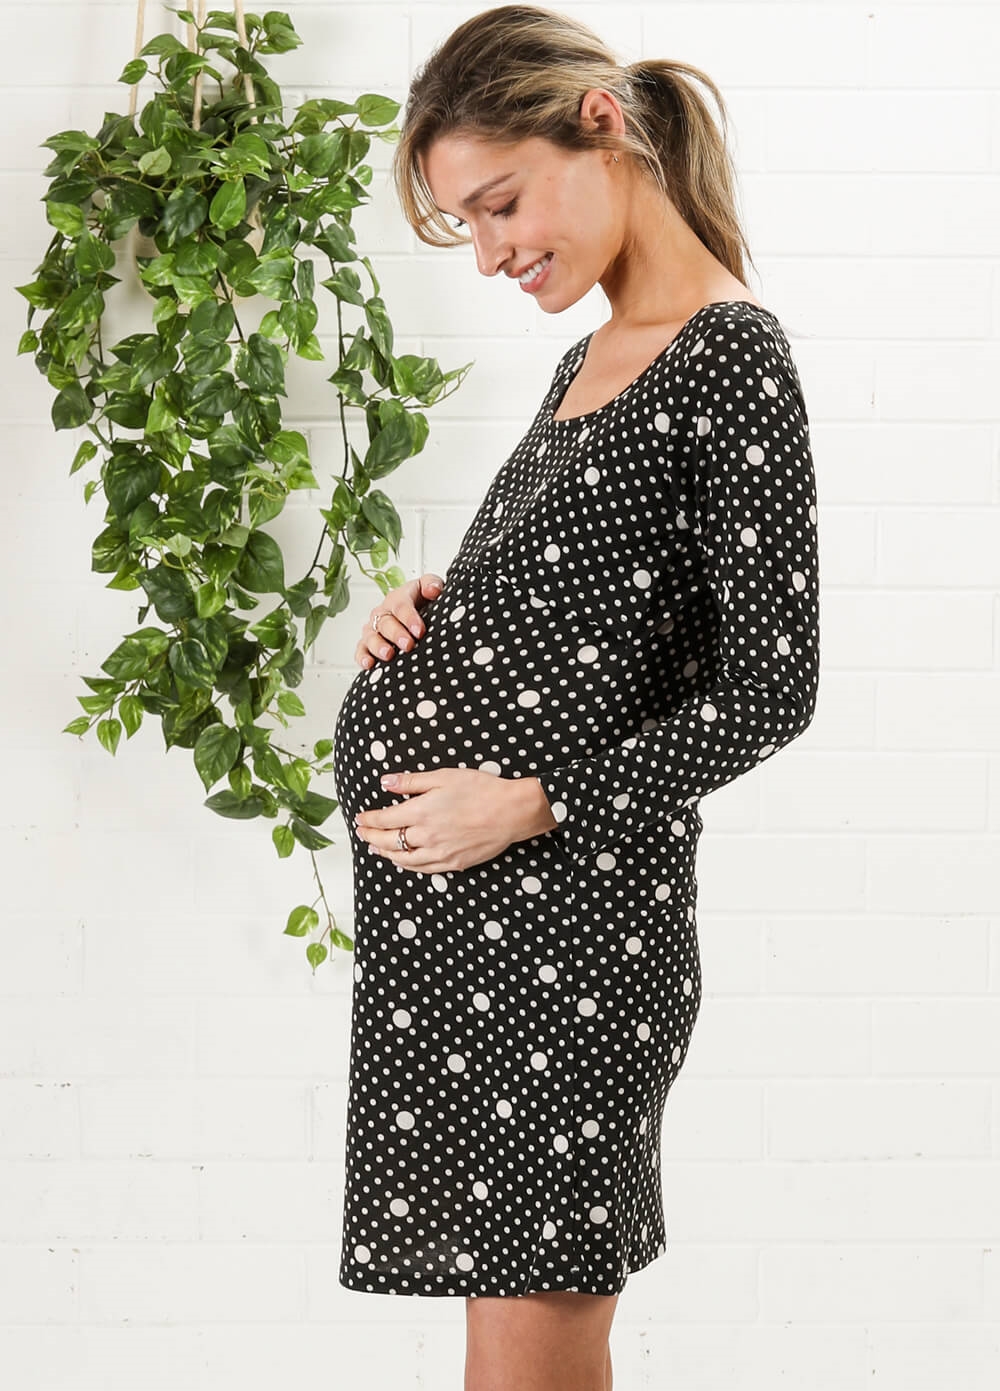 Tayla Spotted Polkadot Maternity Nursing Dress by Trimester Clothing